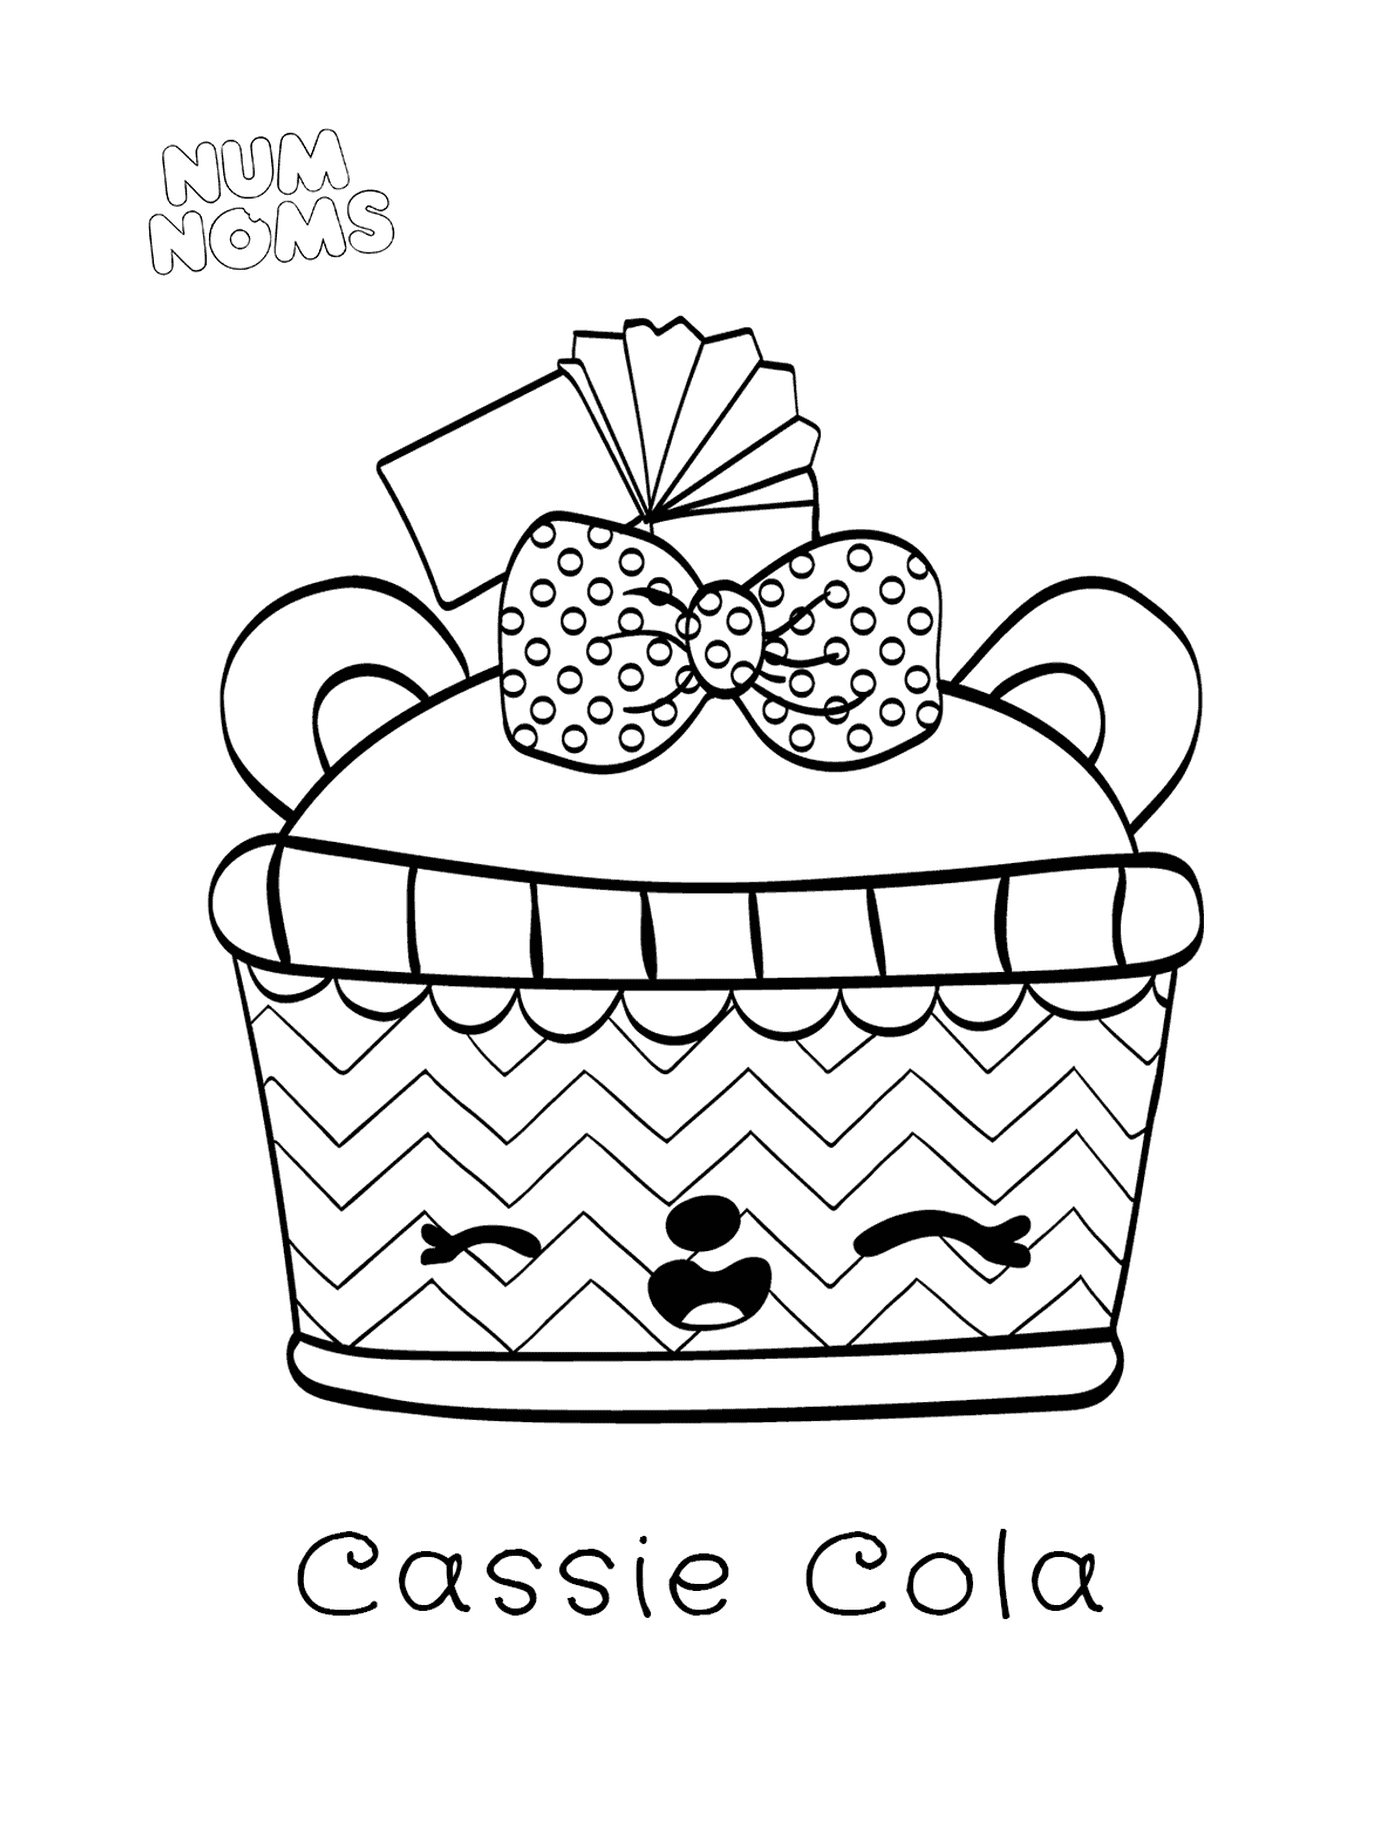  Nombres numéricos de la página para colorear Cassie Cola 